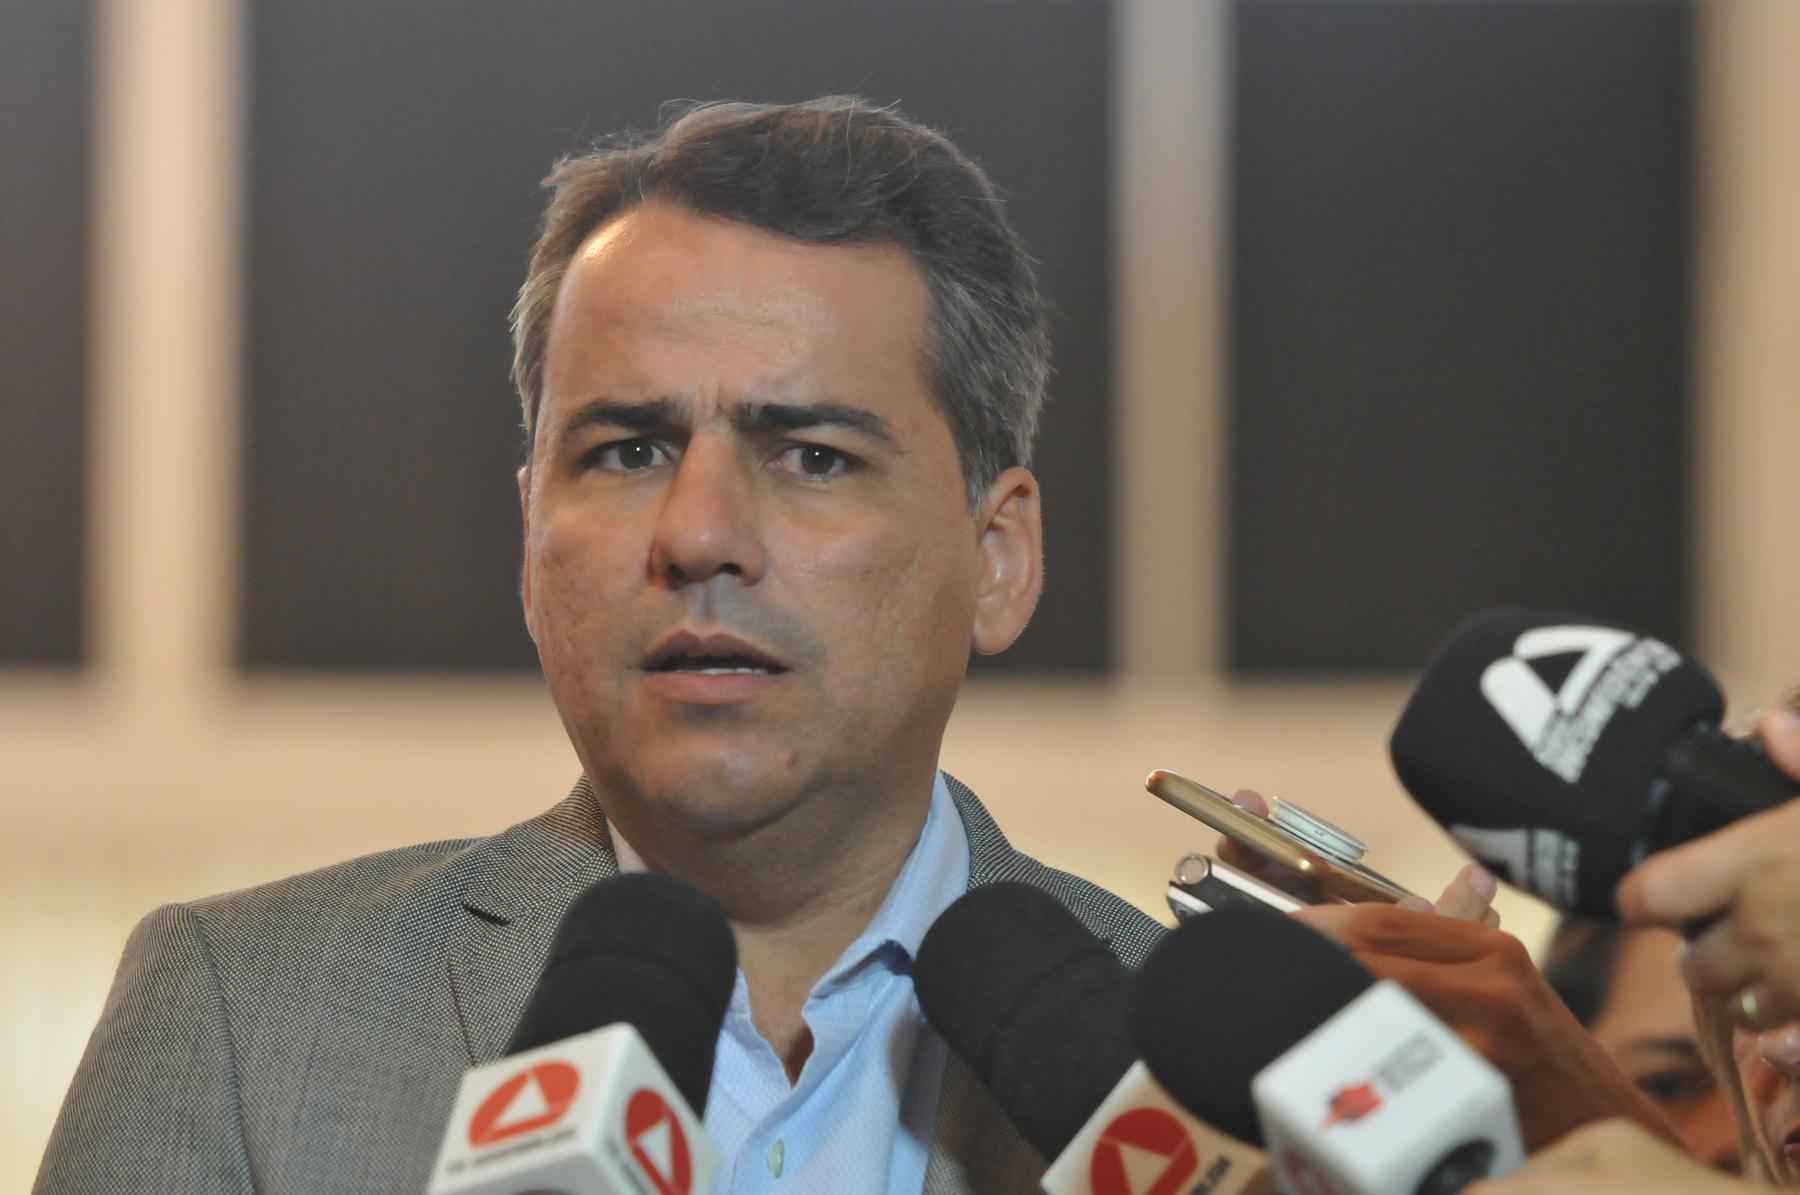 Avante convida oficialmente Julvan Lacerda para disputar o Senado por Minas - Alexandre Guzanshe/EM/D.A Press